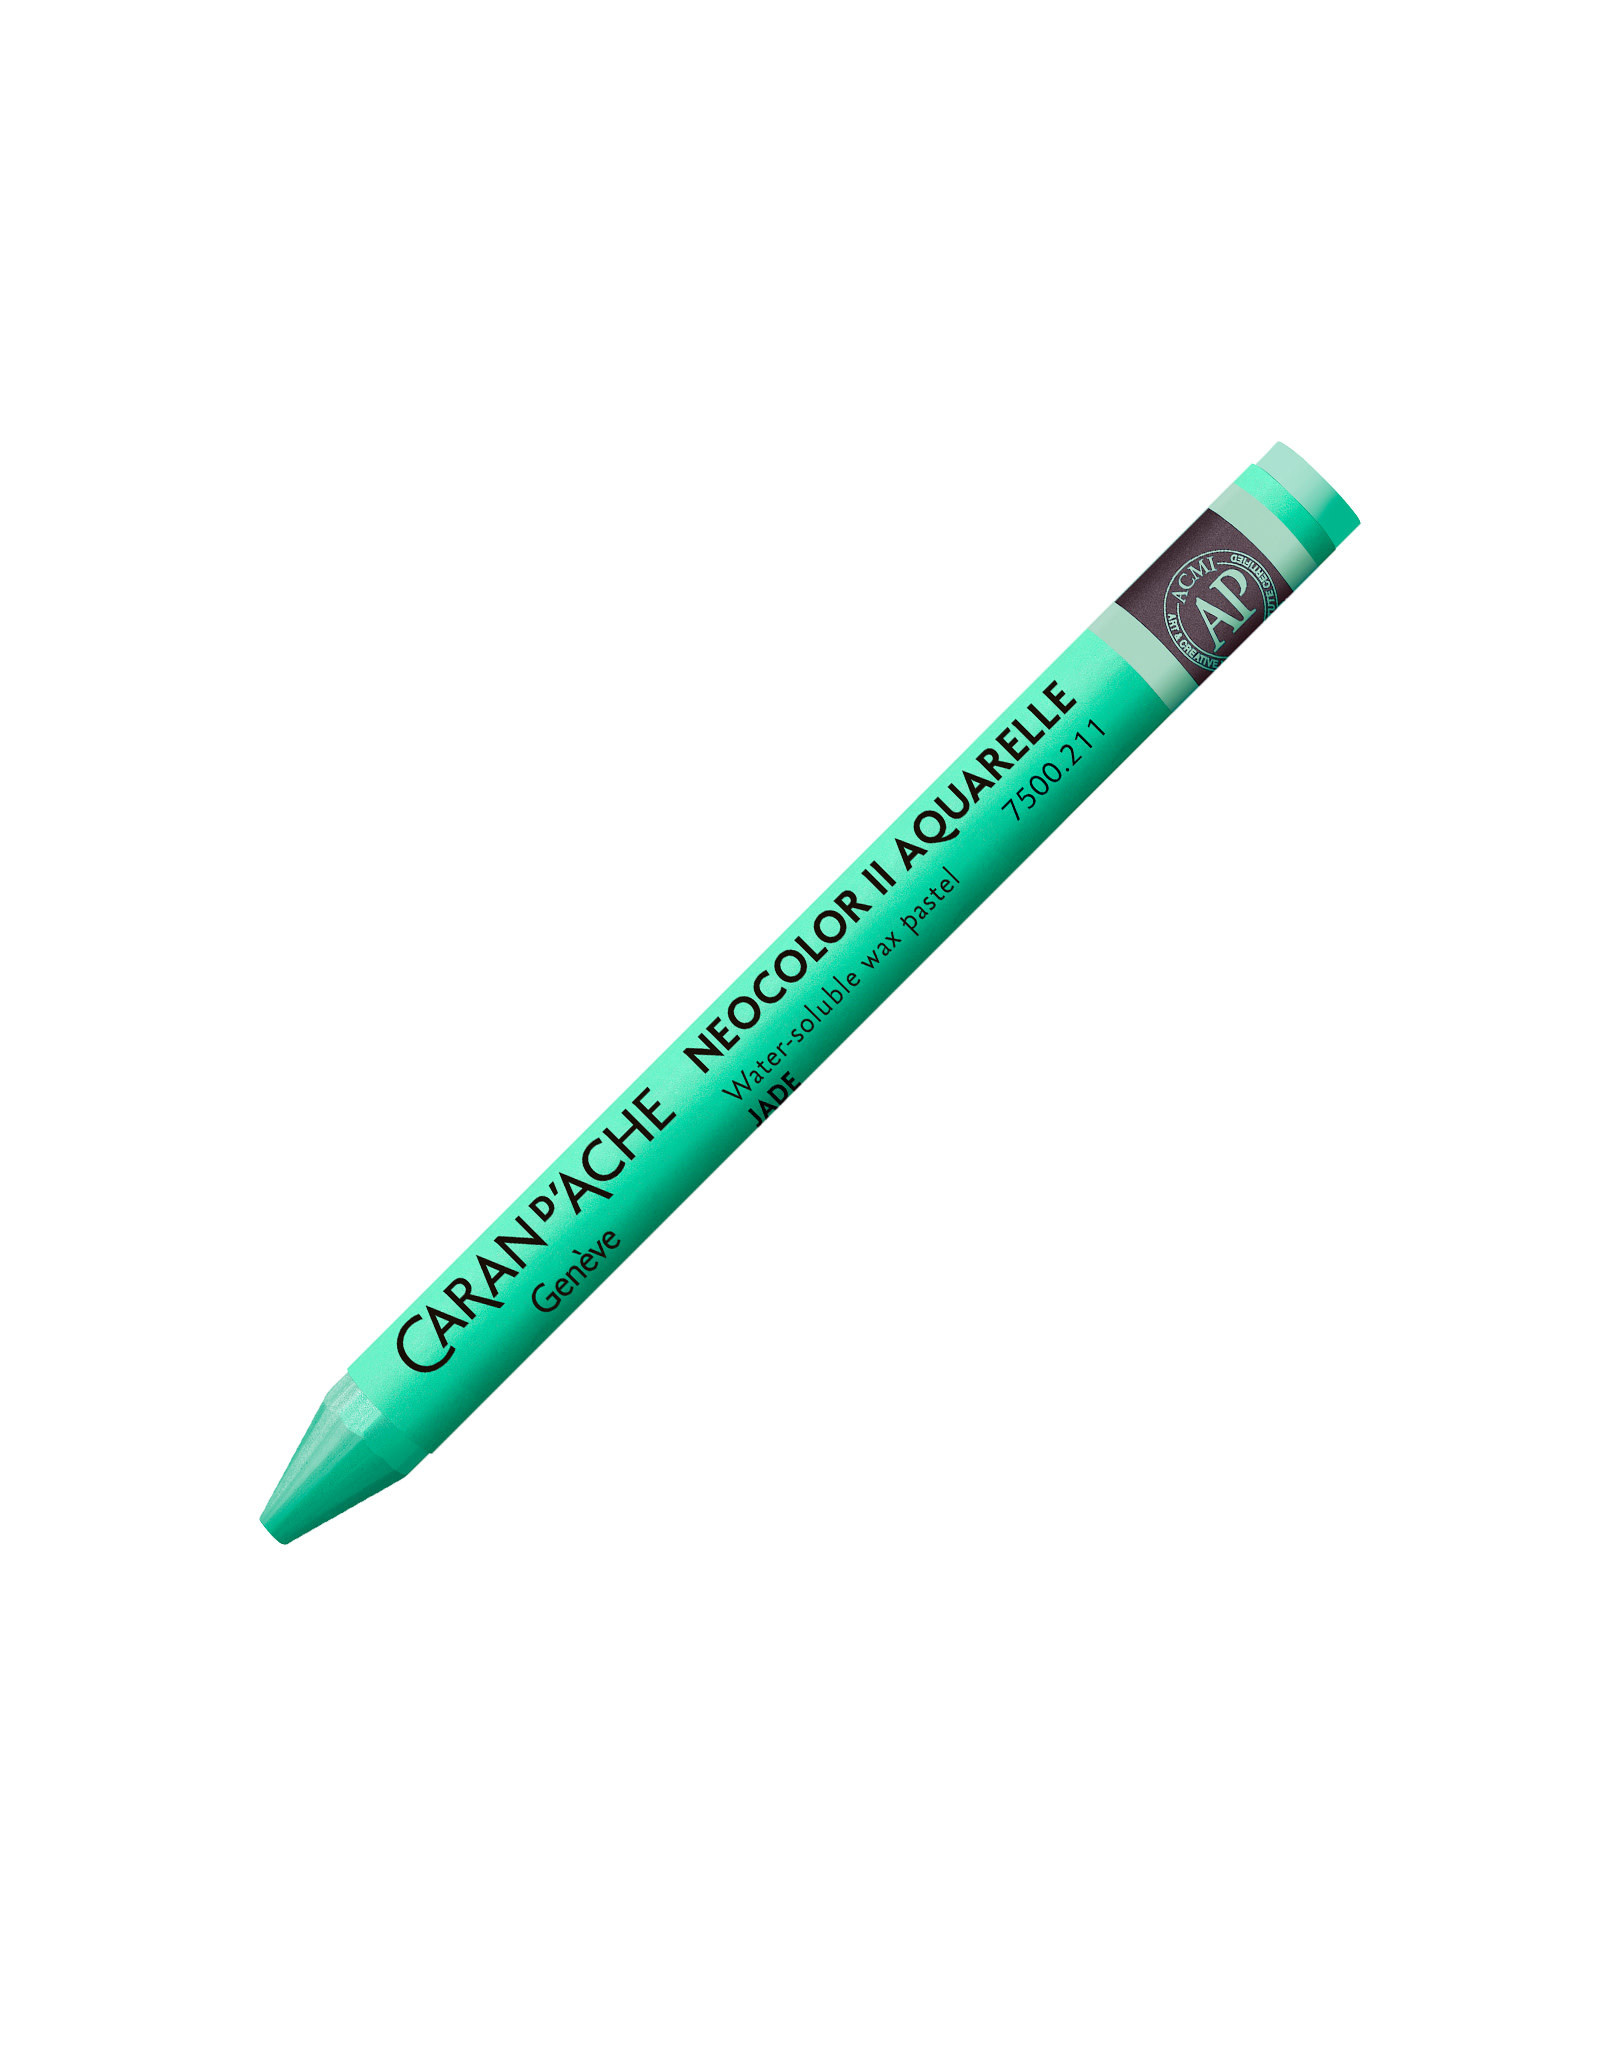 Caran d'Ache Neocolor II Crayons Jade Green